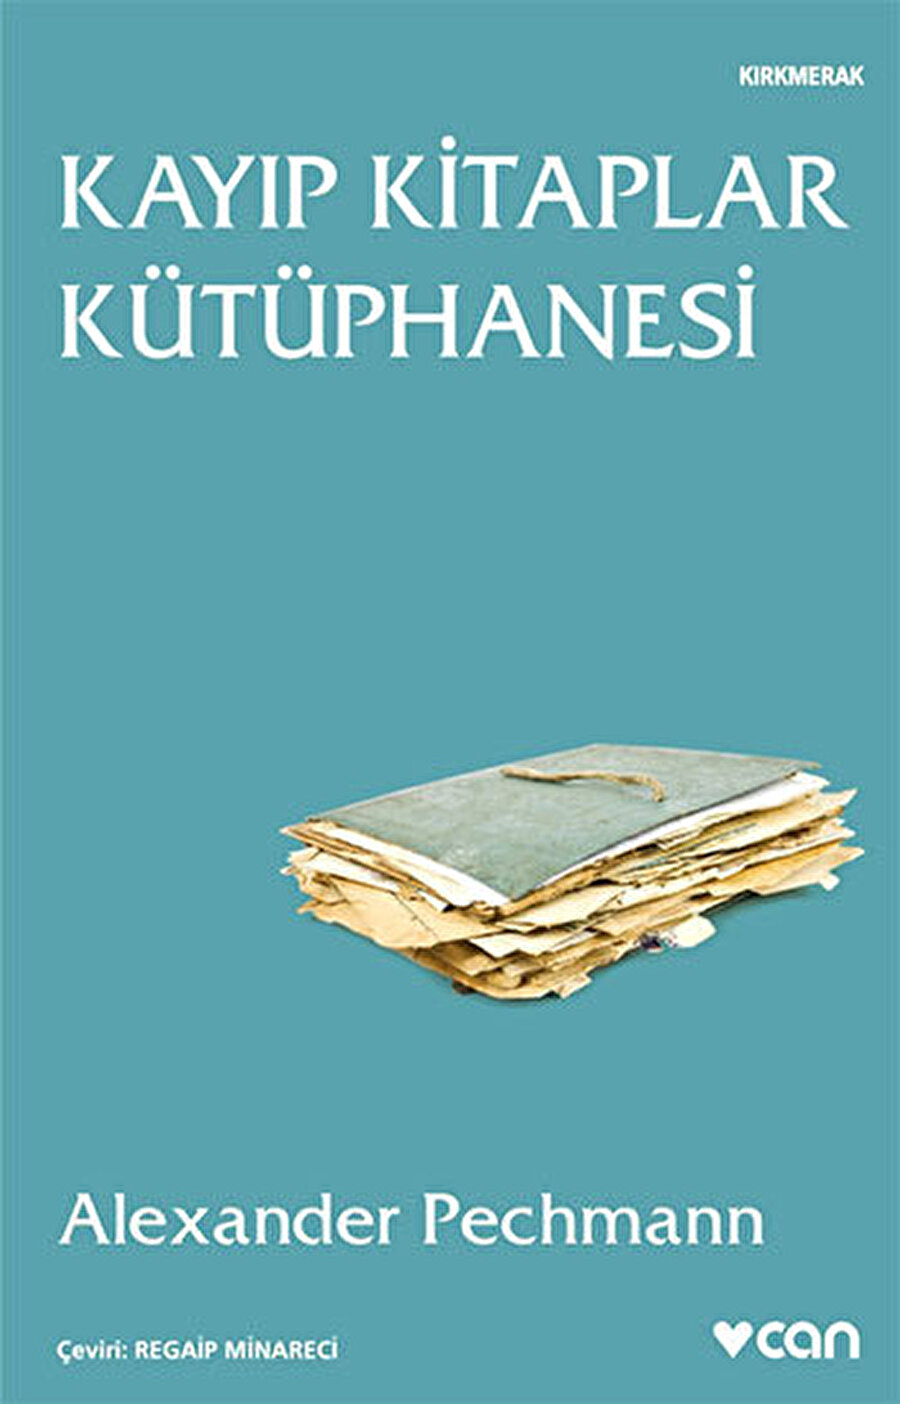 Alexander Pechmann’nın 2007 yılında yayımlanan Kayıp Kitaplar Kütüphanesi Can Yayınları etiketiyle Türkçe’ye çevrildi